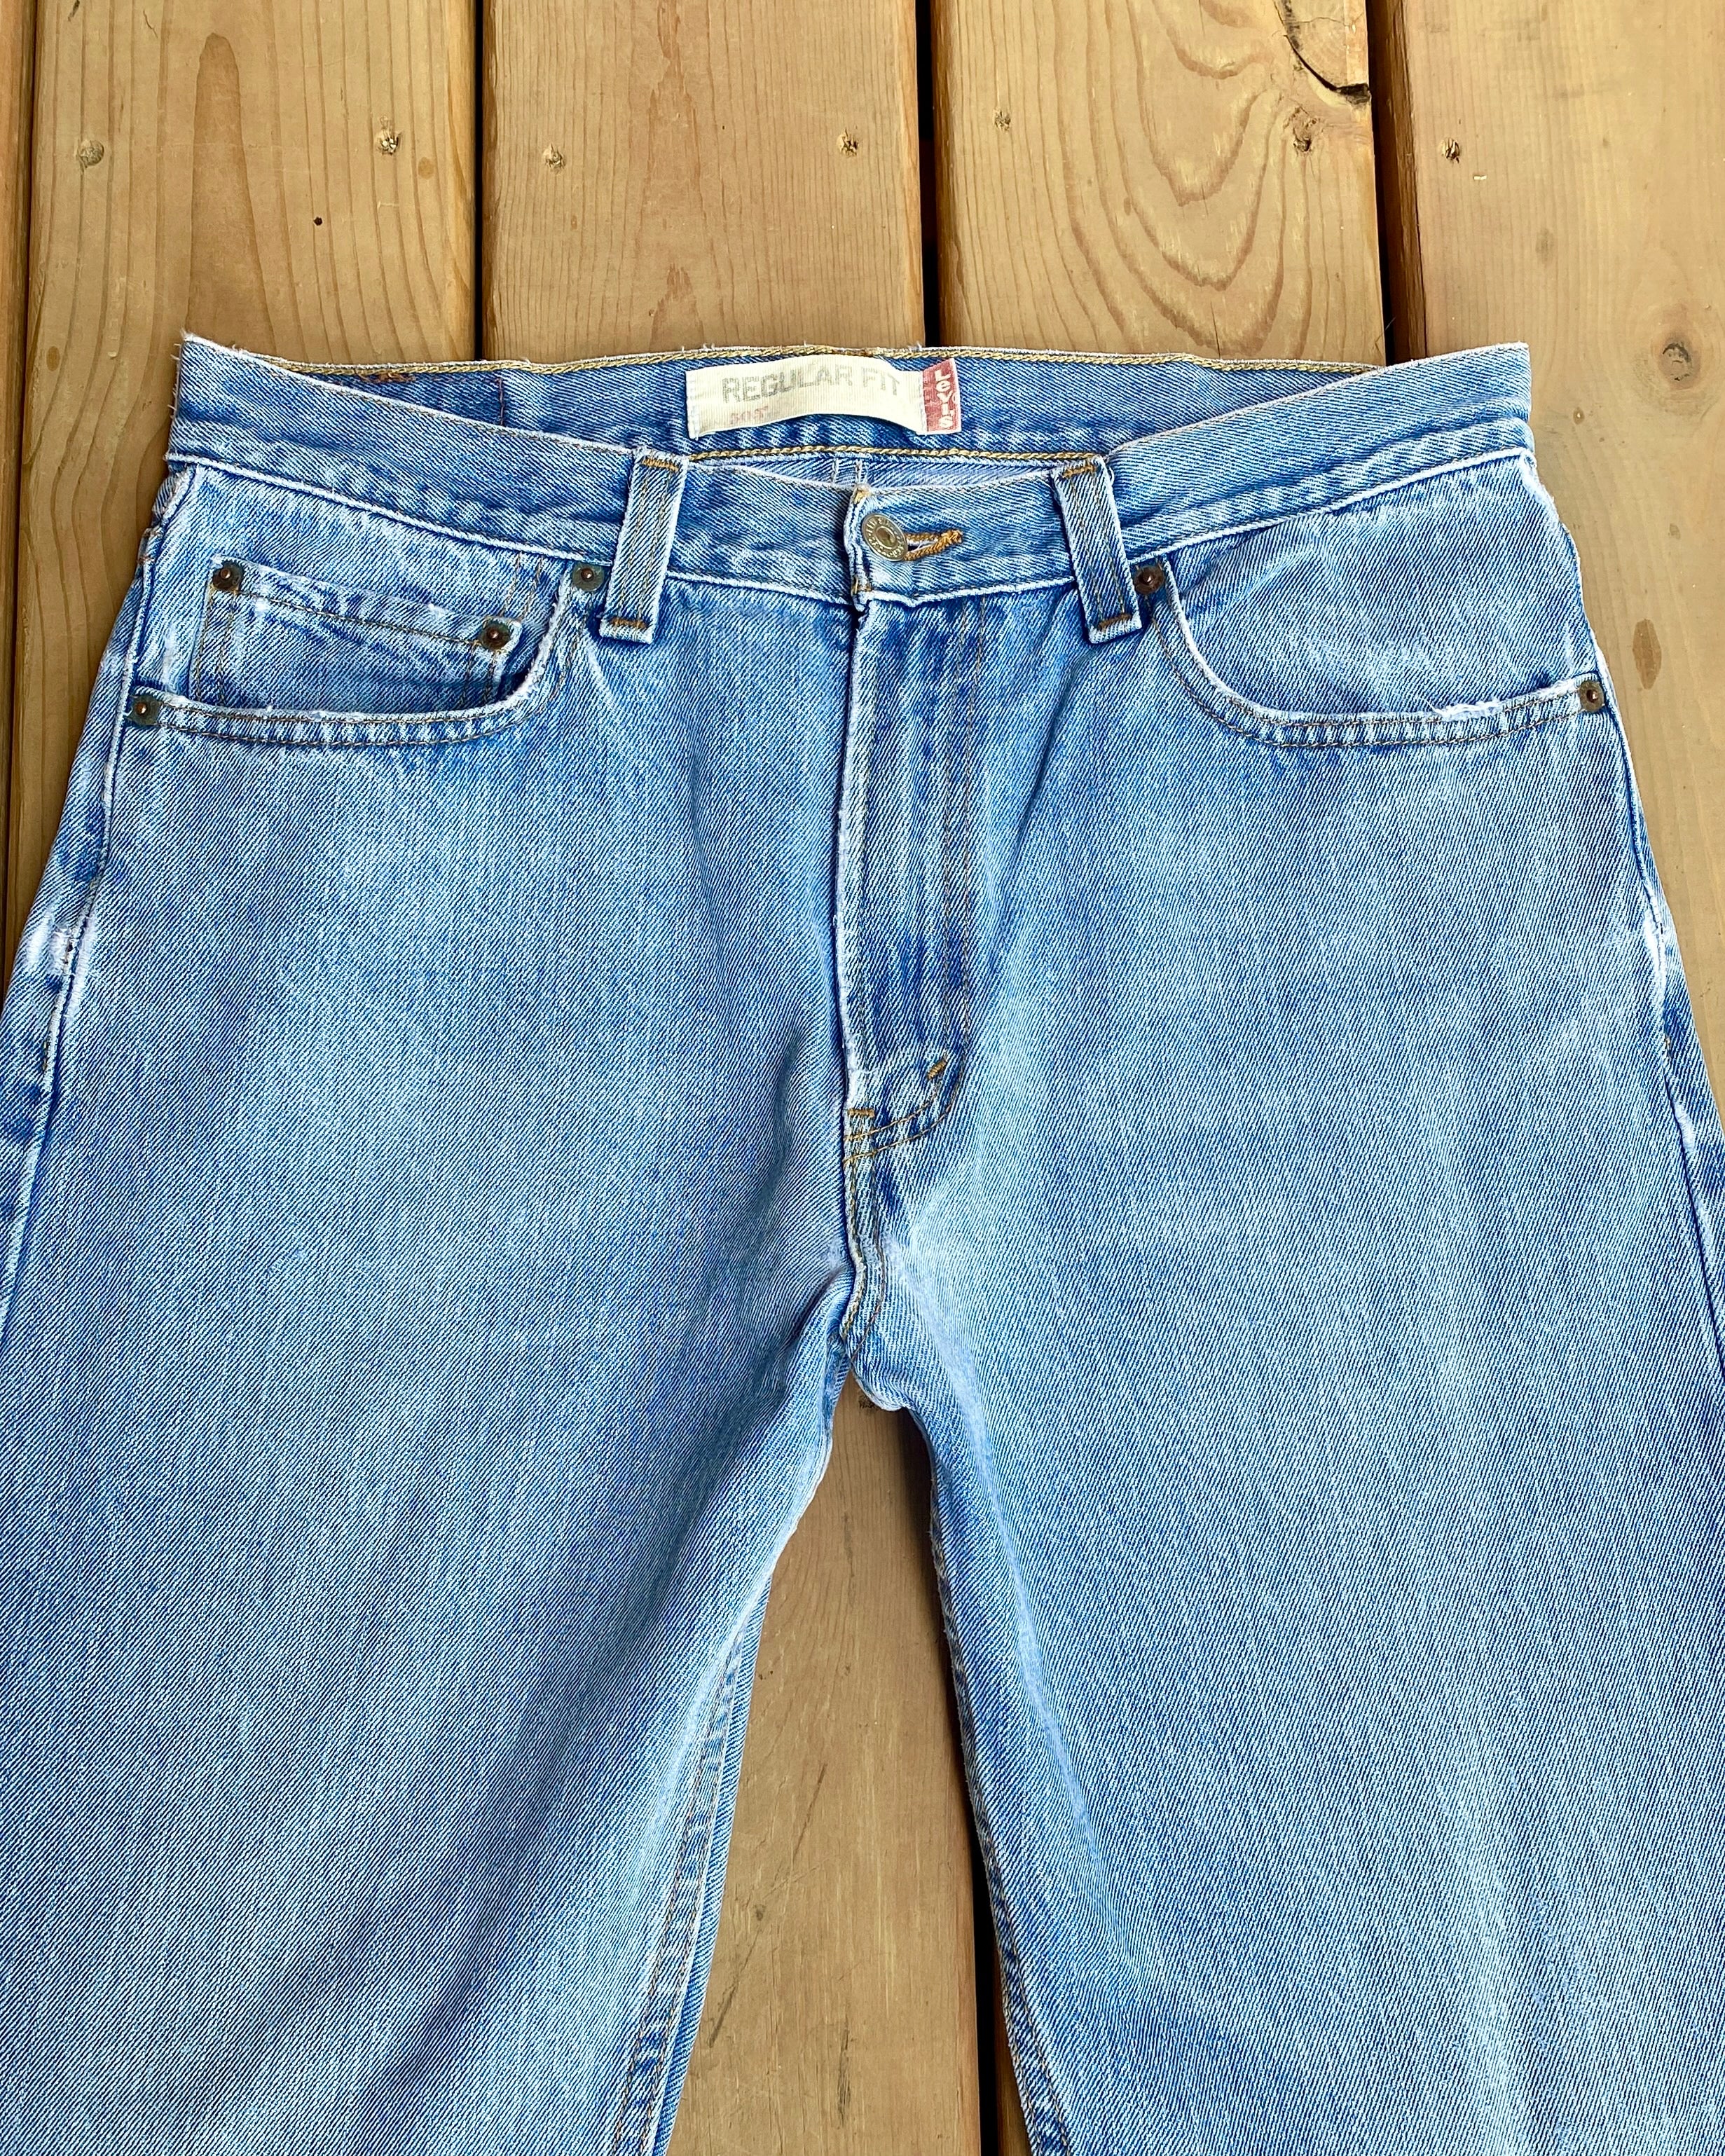 Vintage 1990s Levis 505 Regular Fit Light Wash Jeans size 33